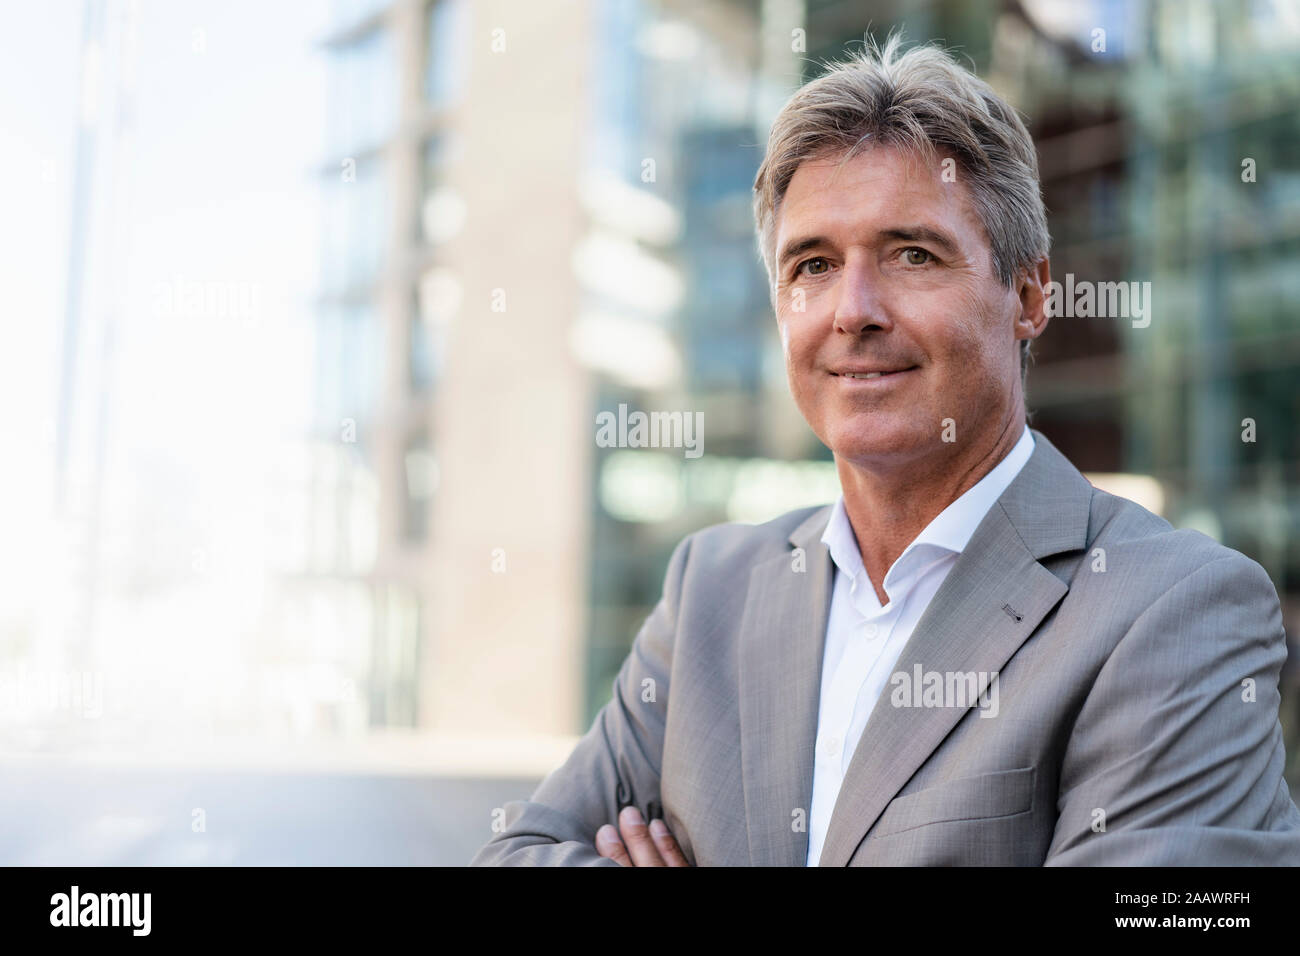 Portrait of mature businessman dans la ville Banque D'Images